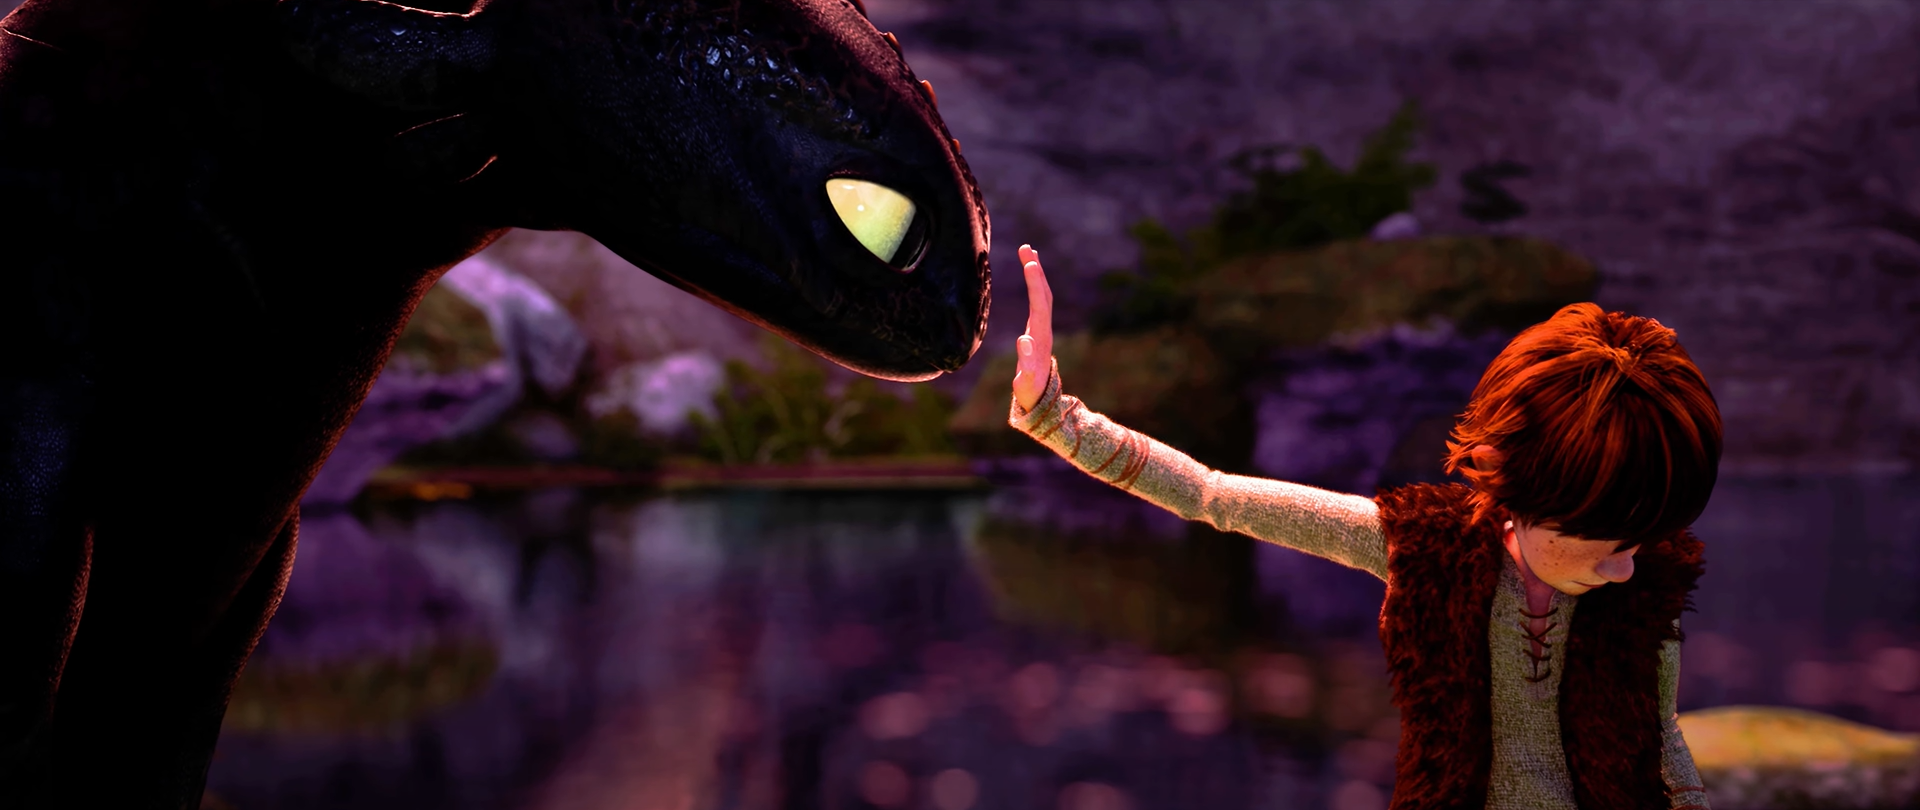 Dragons : découvrez cinq références cachées dans le film d'animation